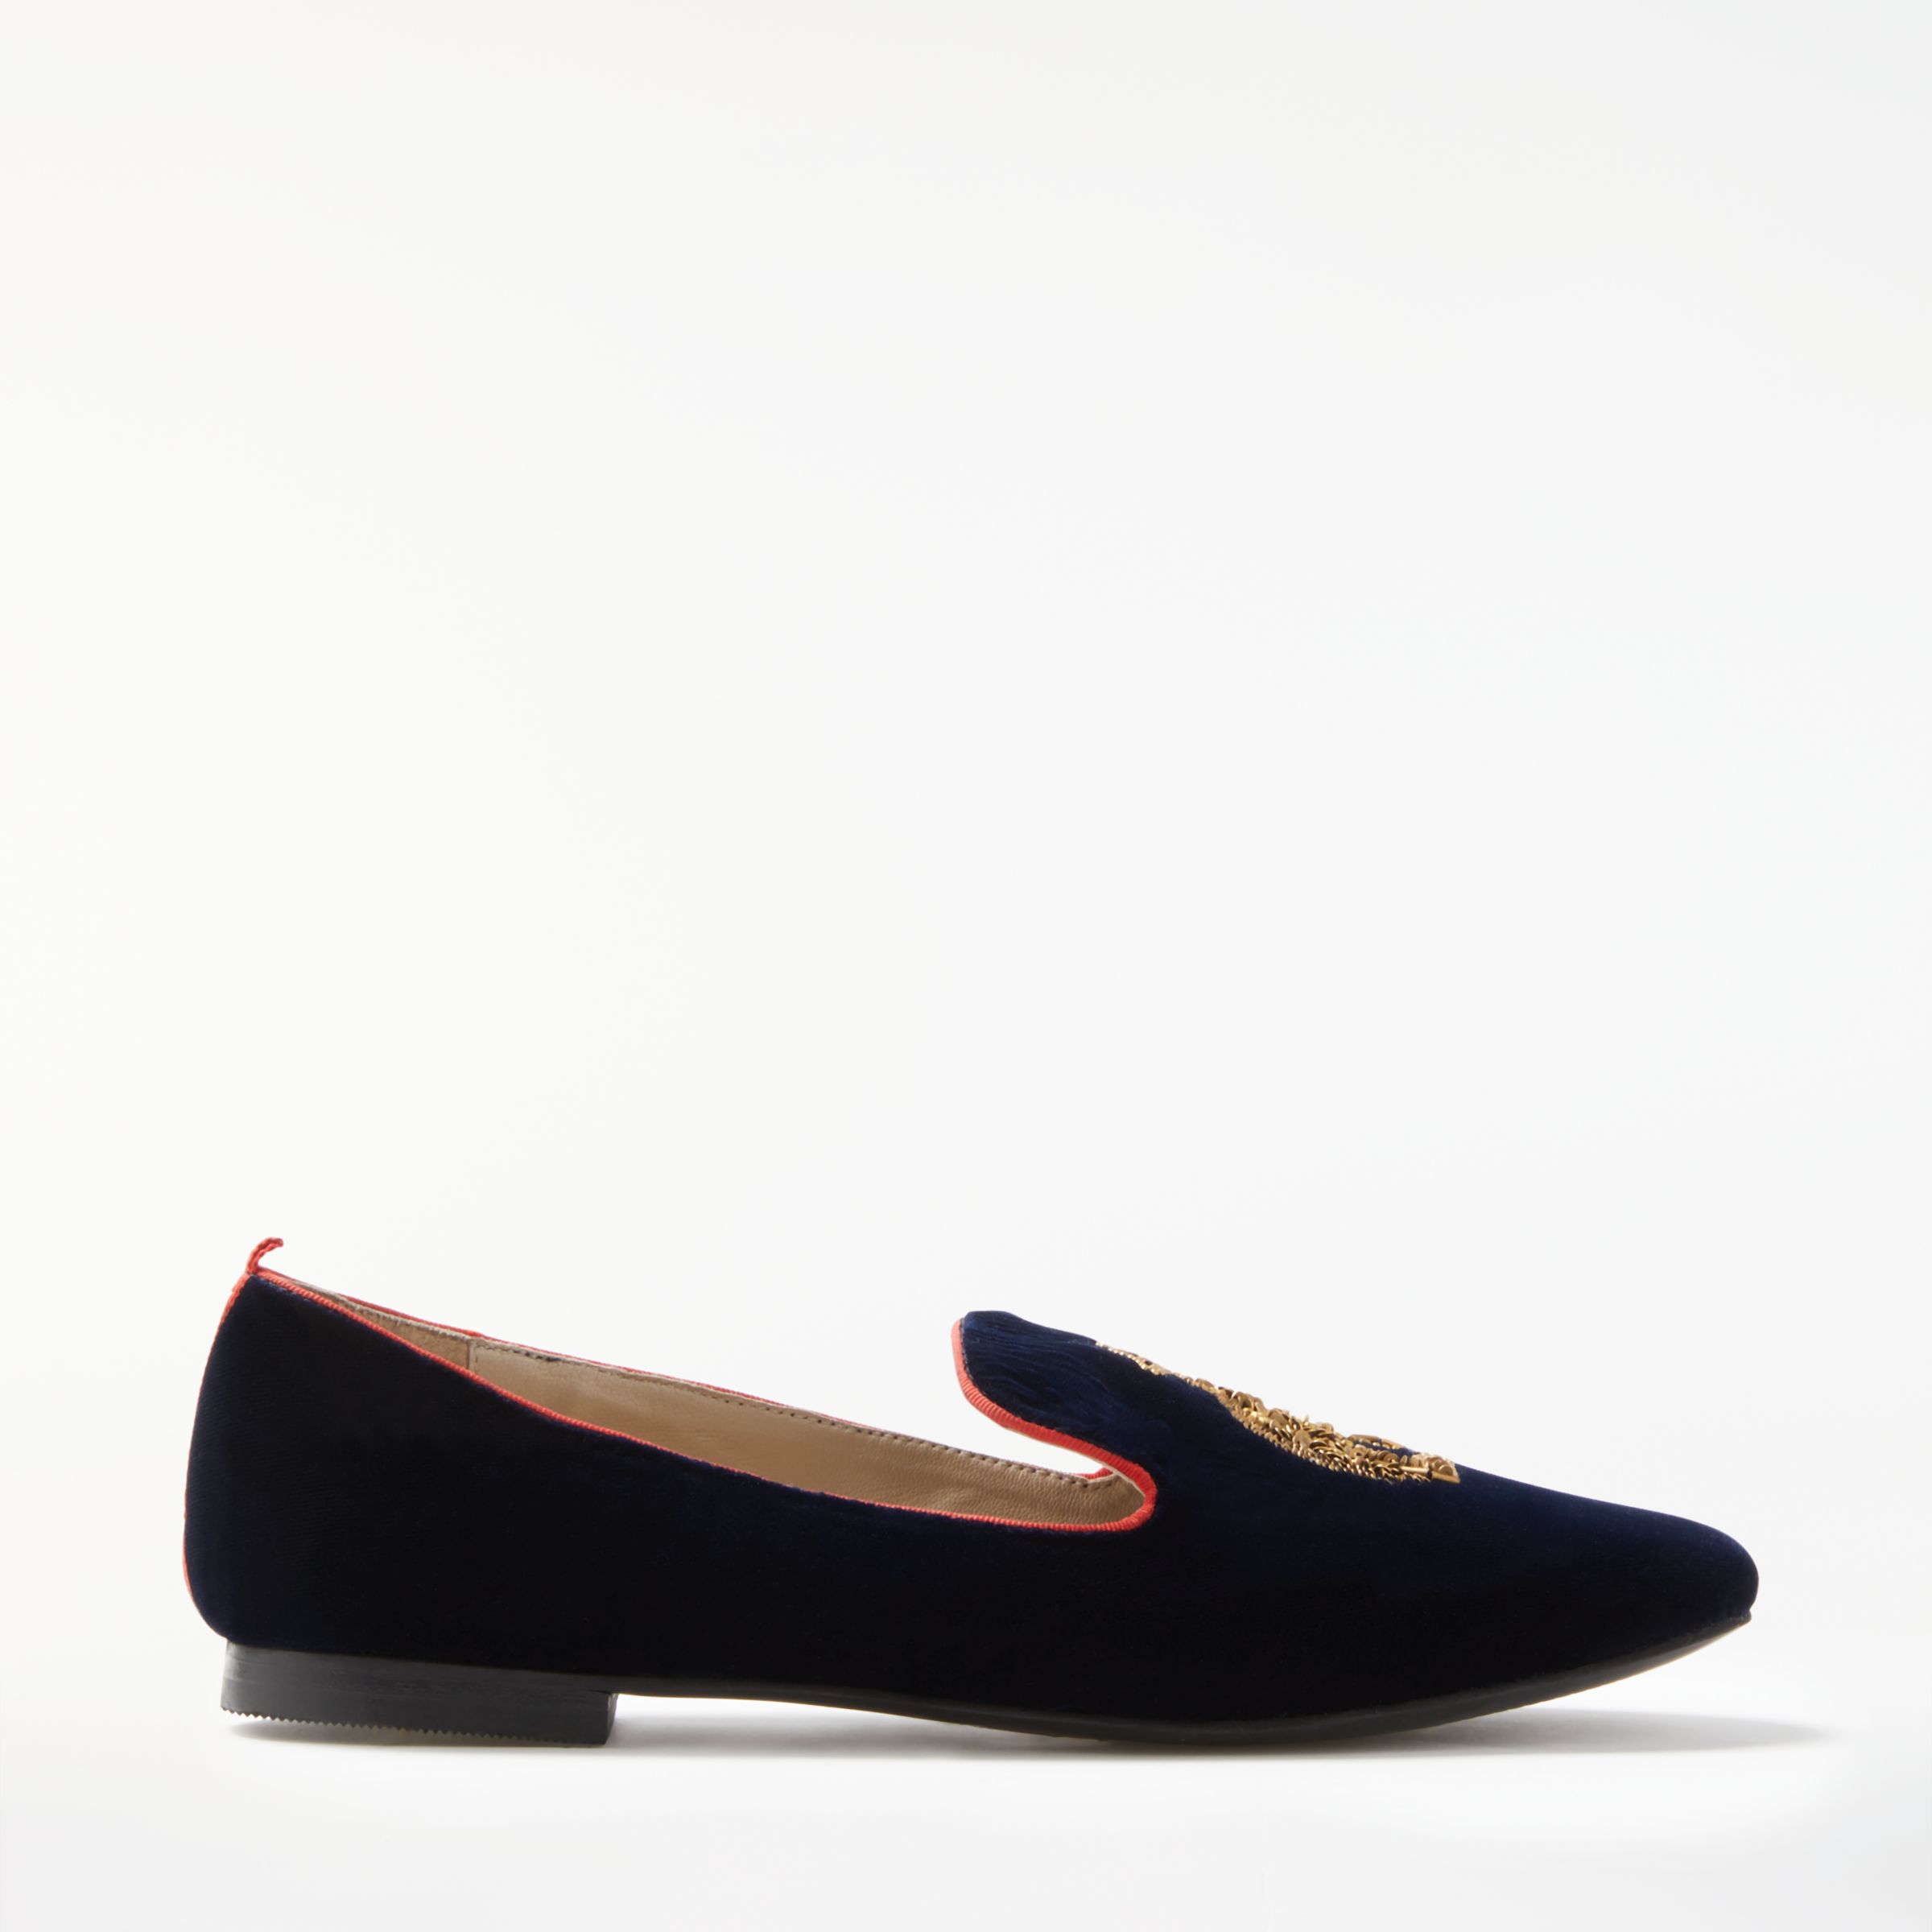 Boden Violetta Embellished Loafers, Navy